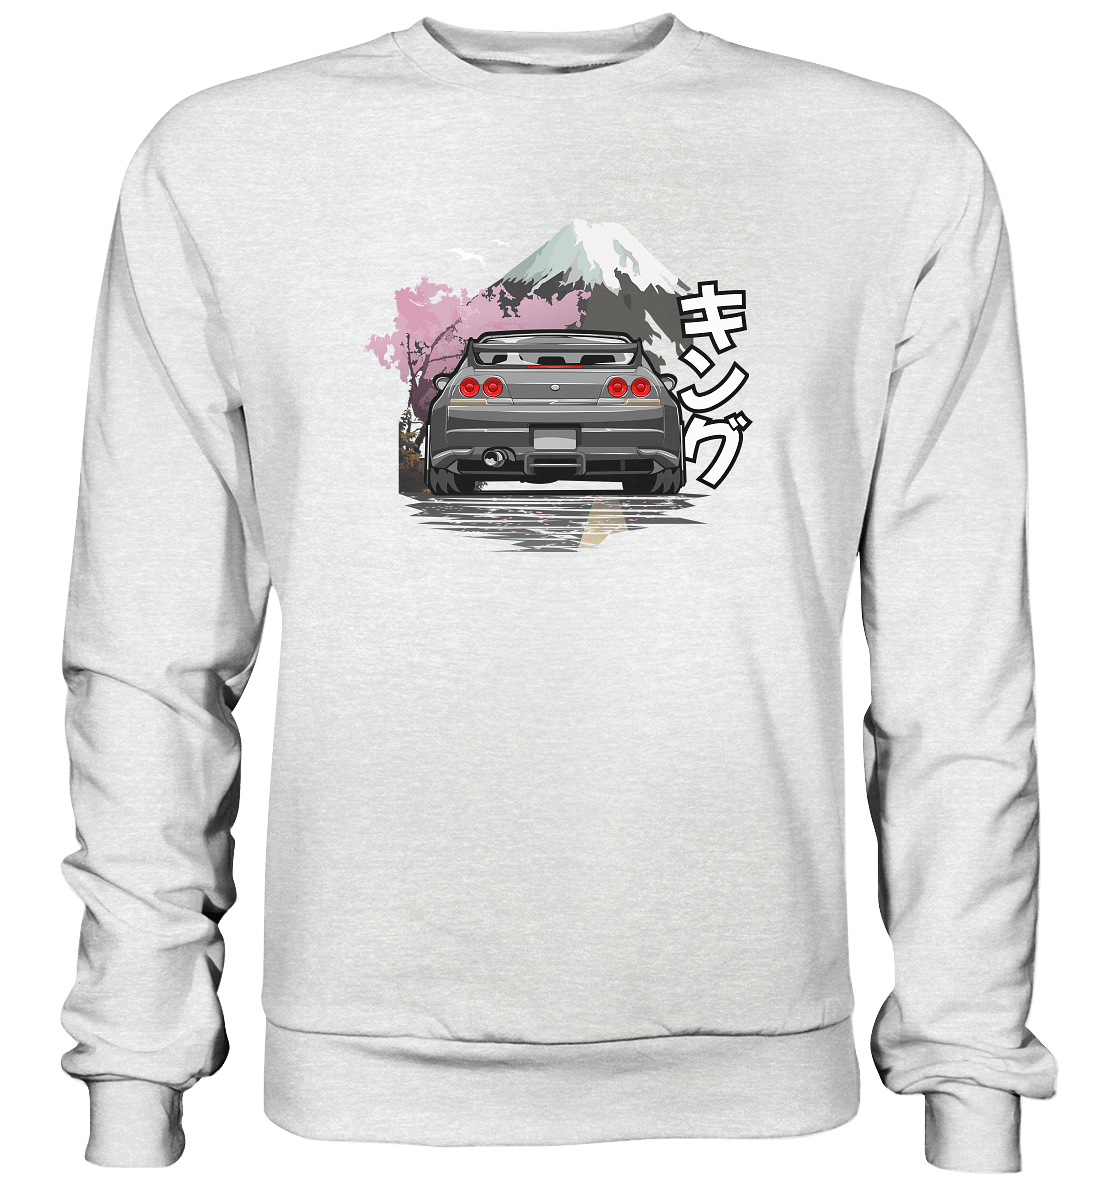 R33 - Premium Sweatshirt - MotoMerch.de